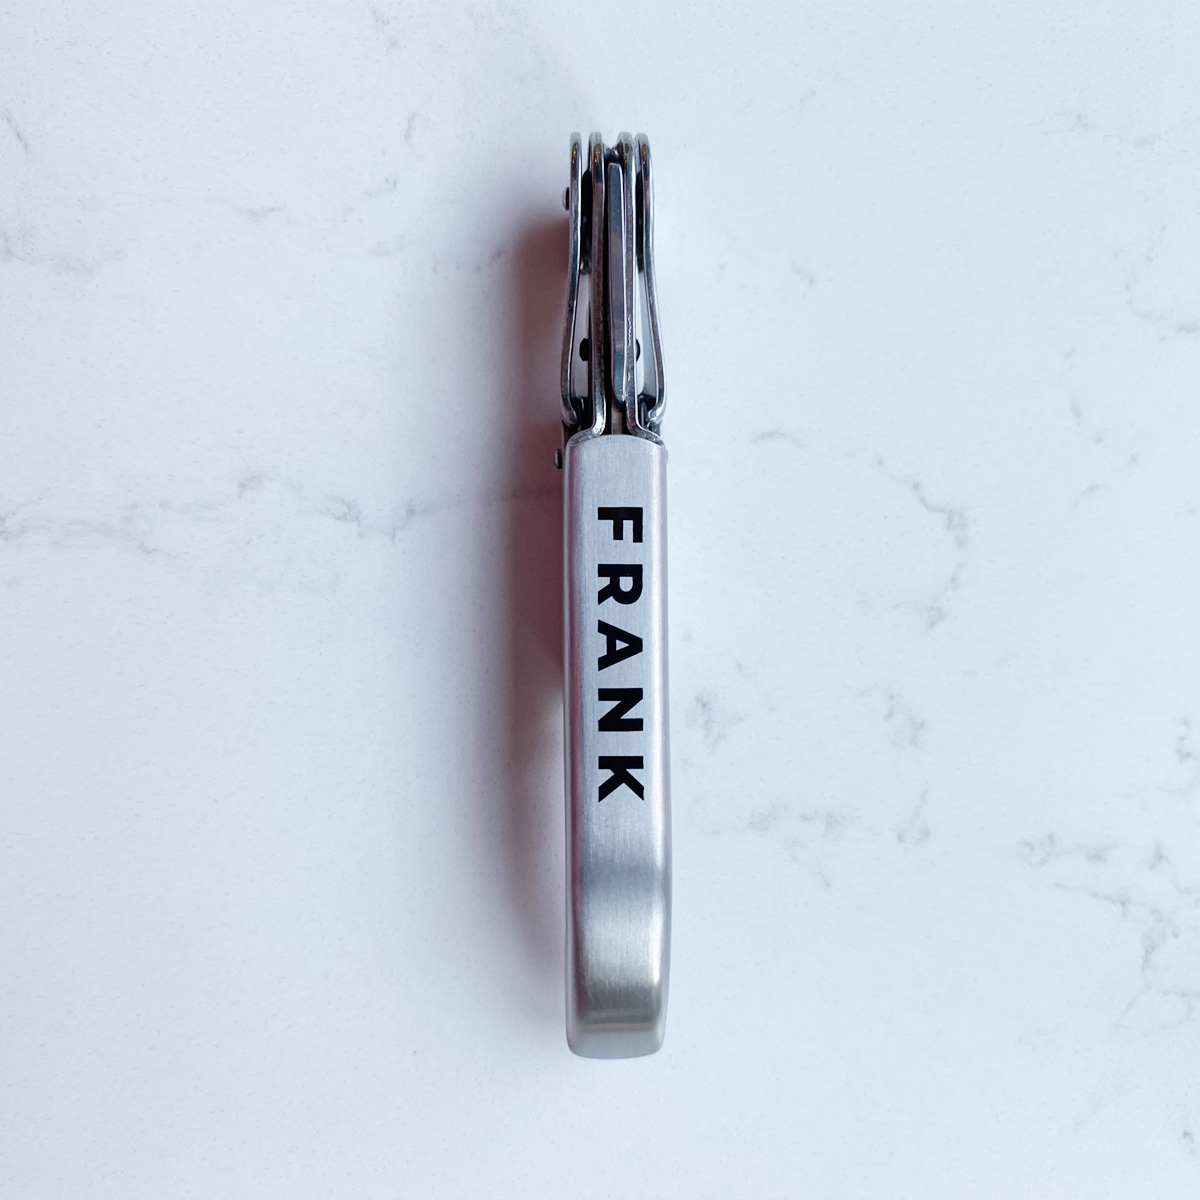 frank-wine-key-stainless-steel-gal-3